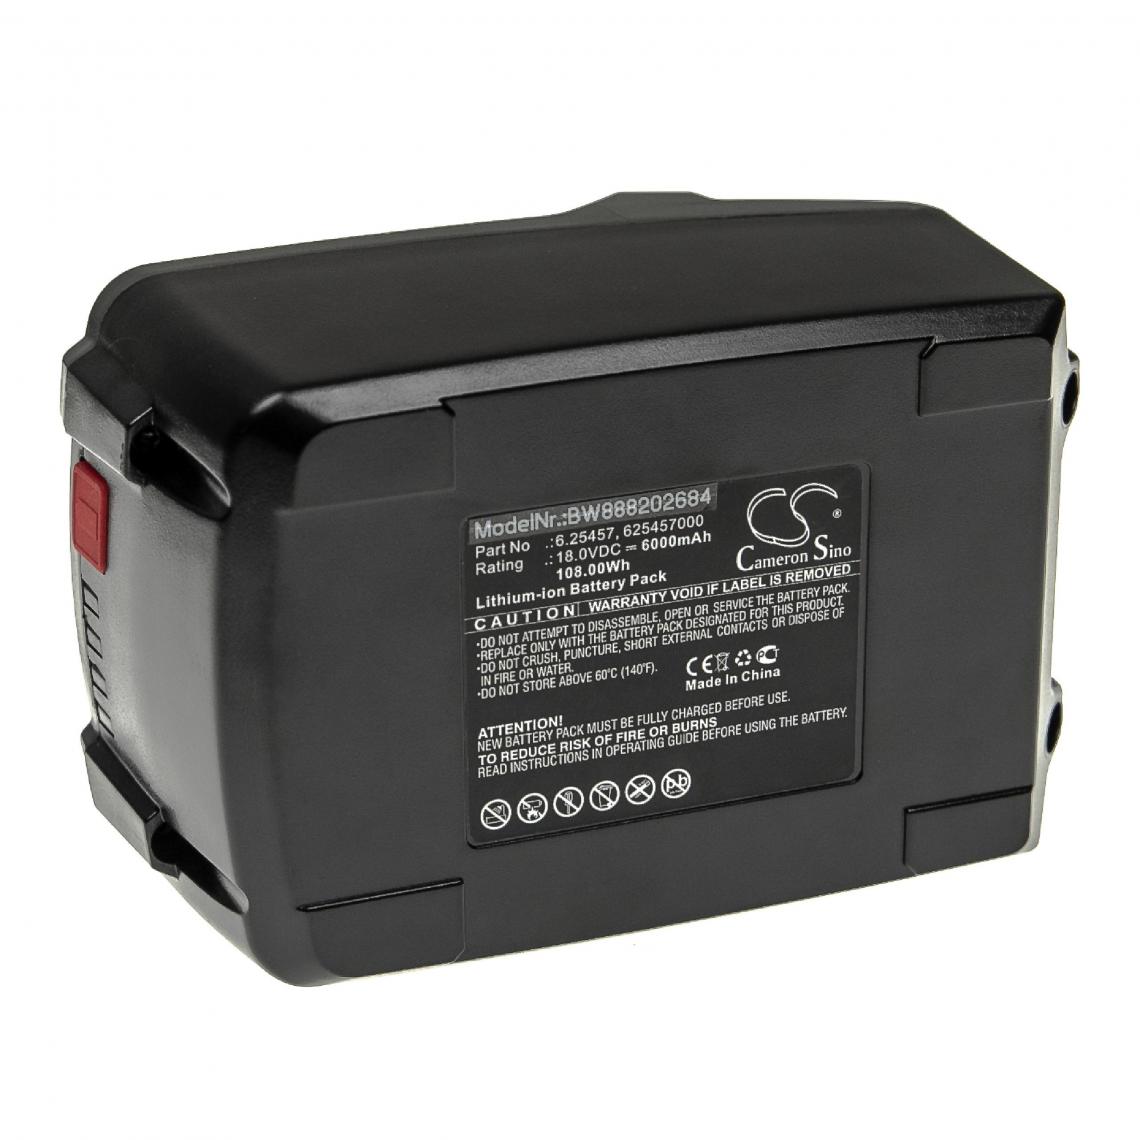 Vhbw - vhbw Batterie compatible avec Metabo BS 18 LT BL 602325550, BS 18 LT BL 602325670 outil électrique (6000mAh Li-ion 18 V) - Autre appareil de mesure